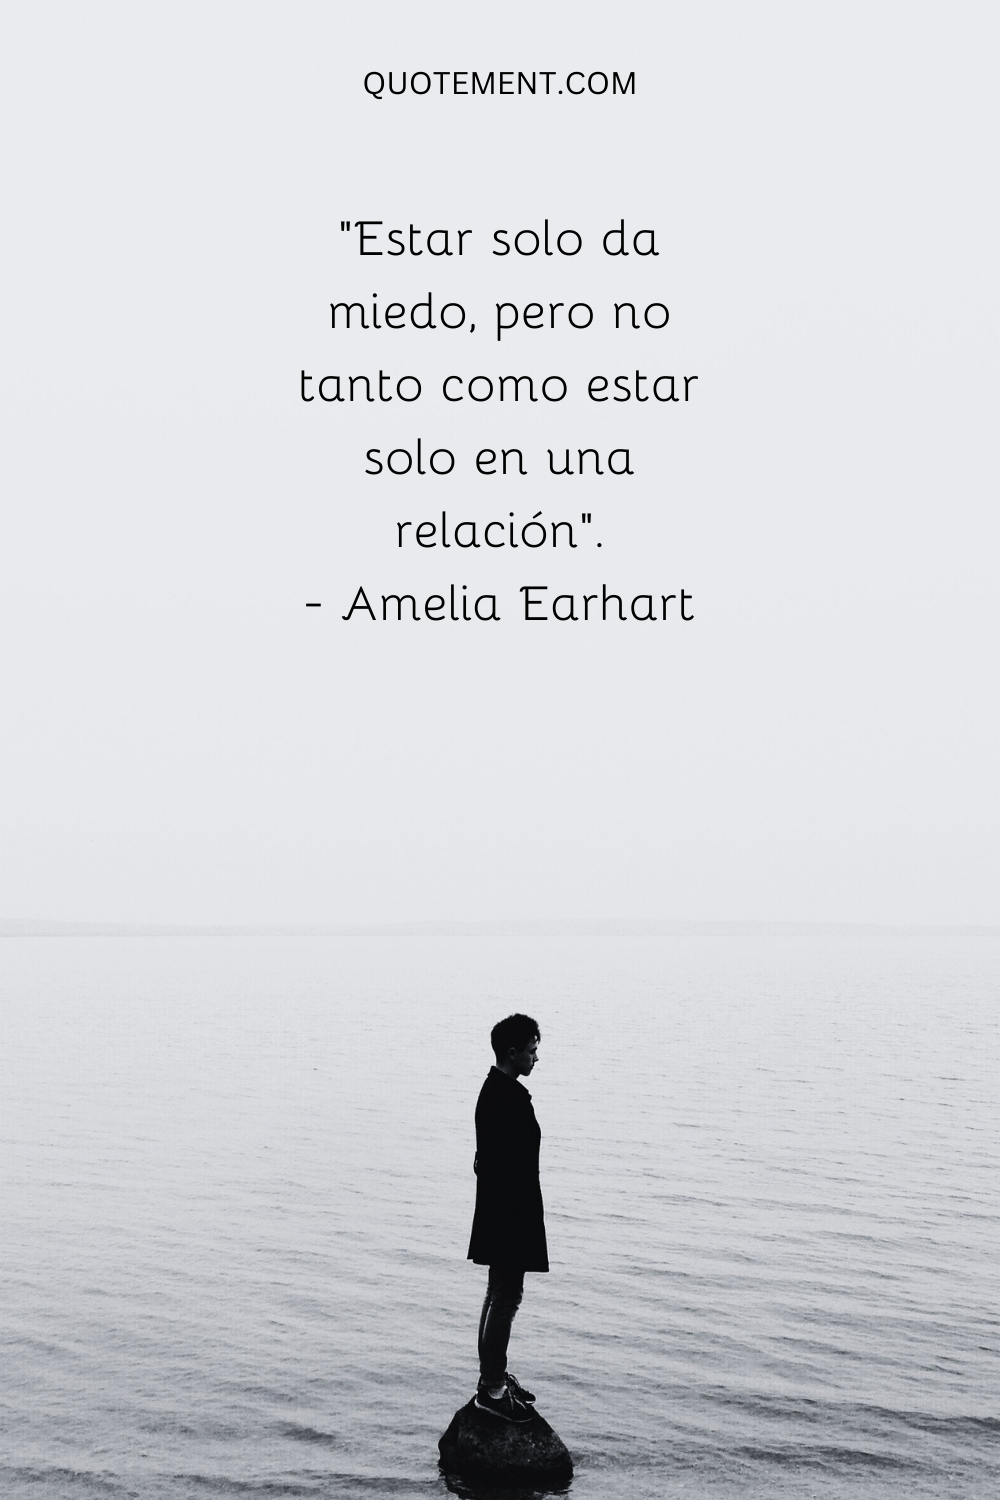 "Estar solo da miedo, pero no tanto como estar solo en una relación". - Amelia Earhart